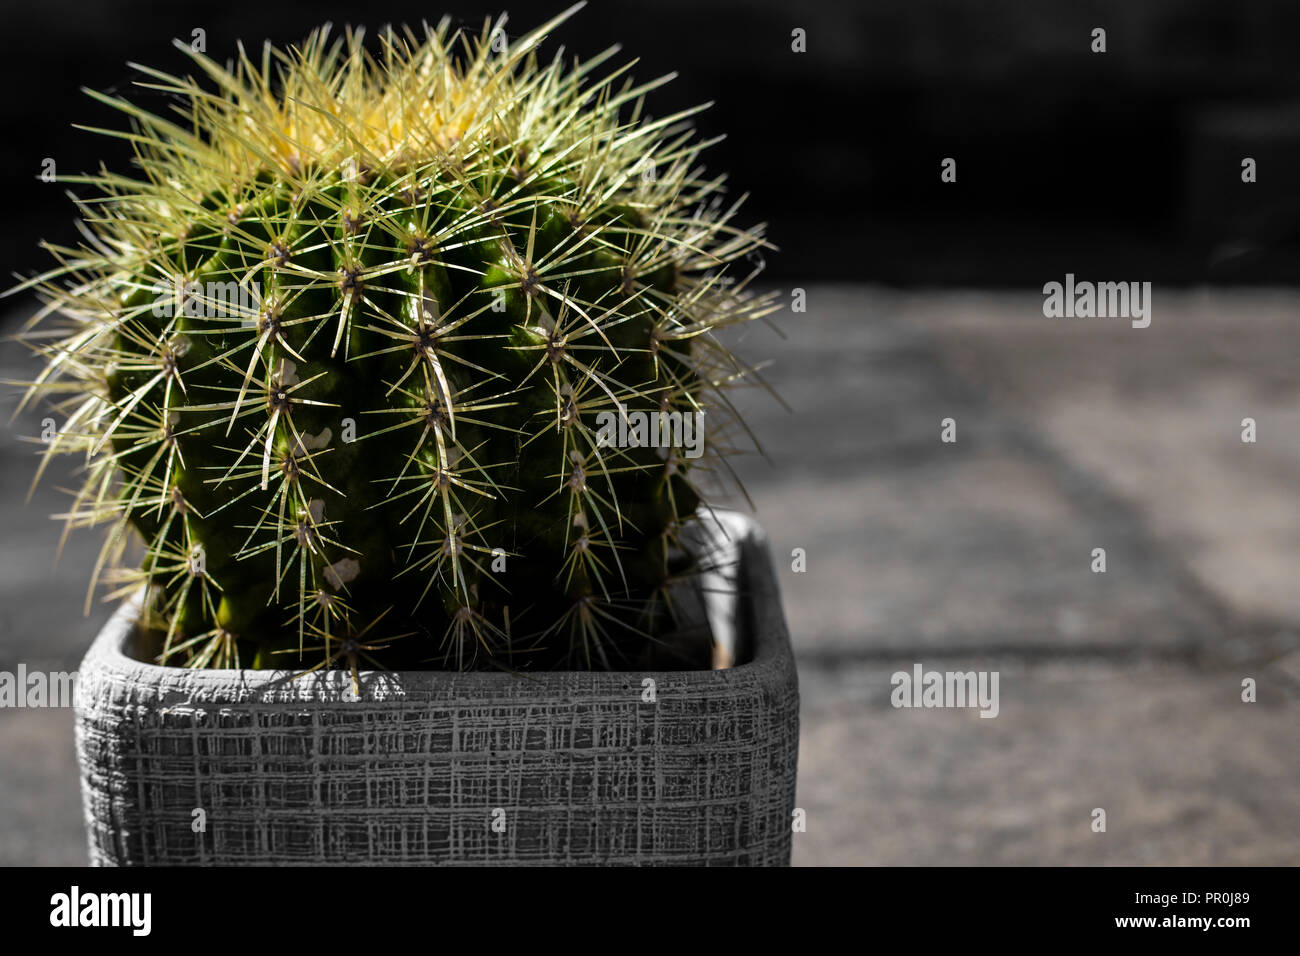 Gros plan d'un cactus épineux plante dans un pot avec un fond musical. Banque D'Images